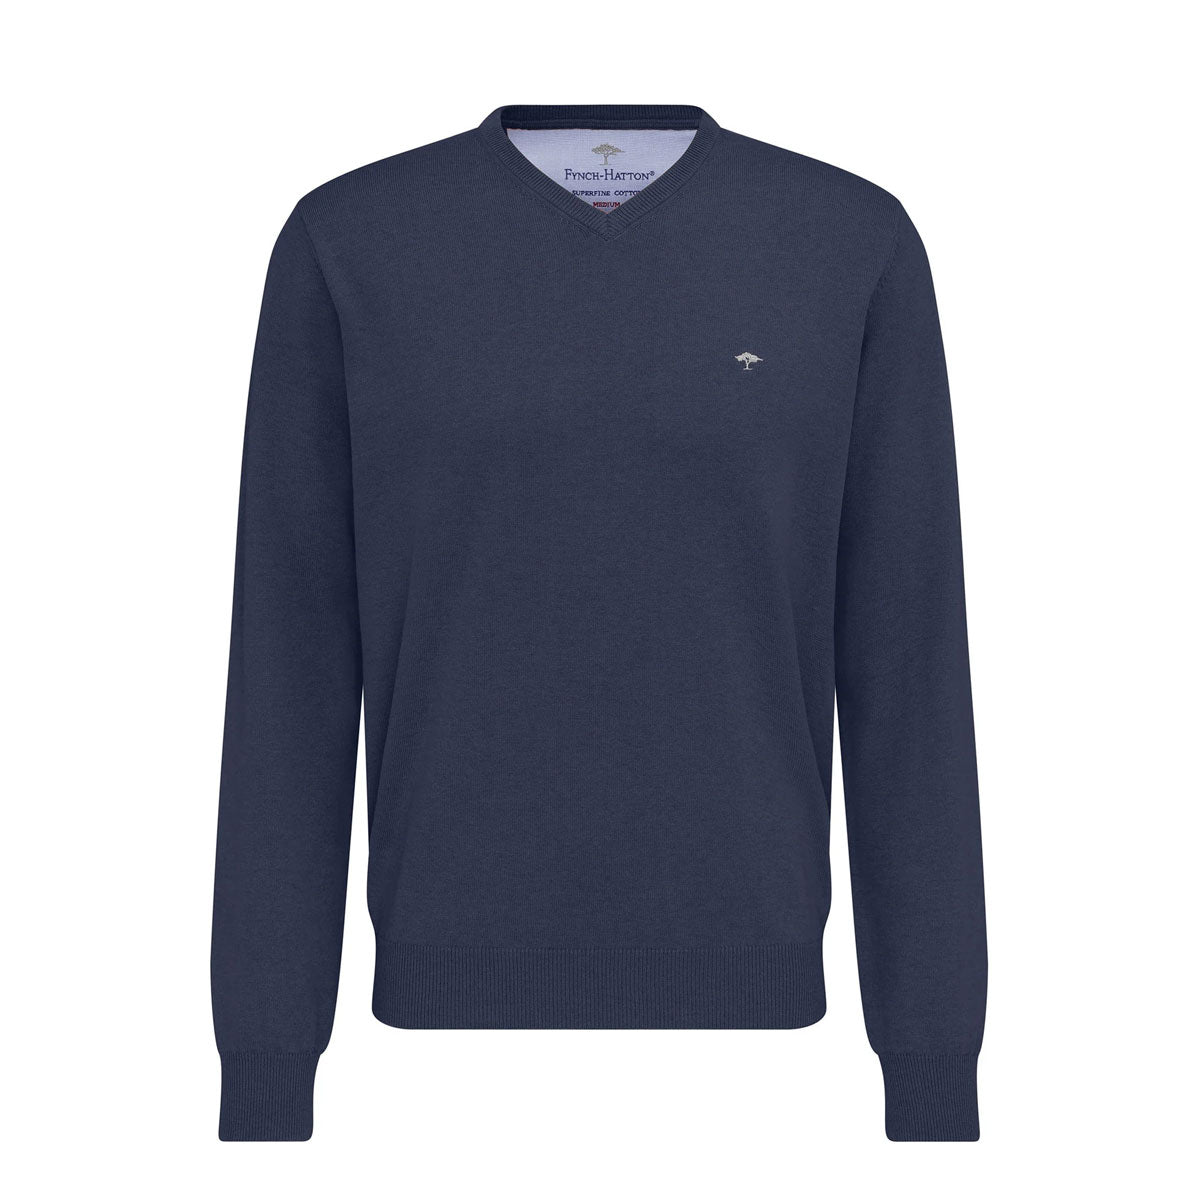 Fynch Hatton Men's Blue V Neck Sweater Superfine Cotton